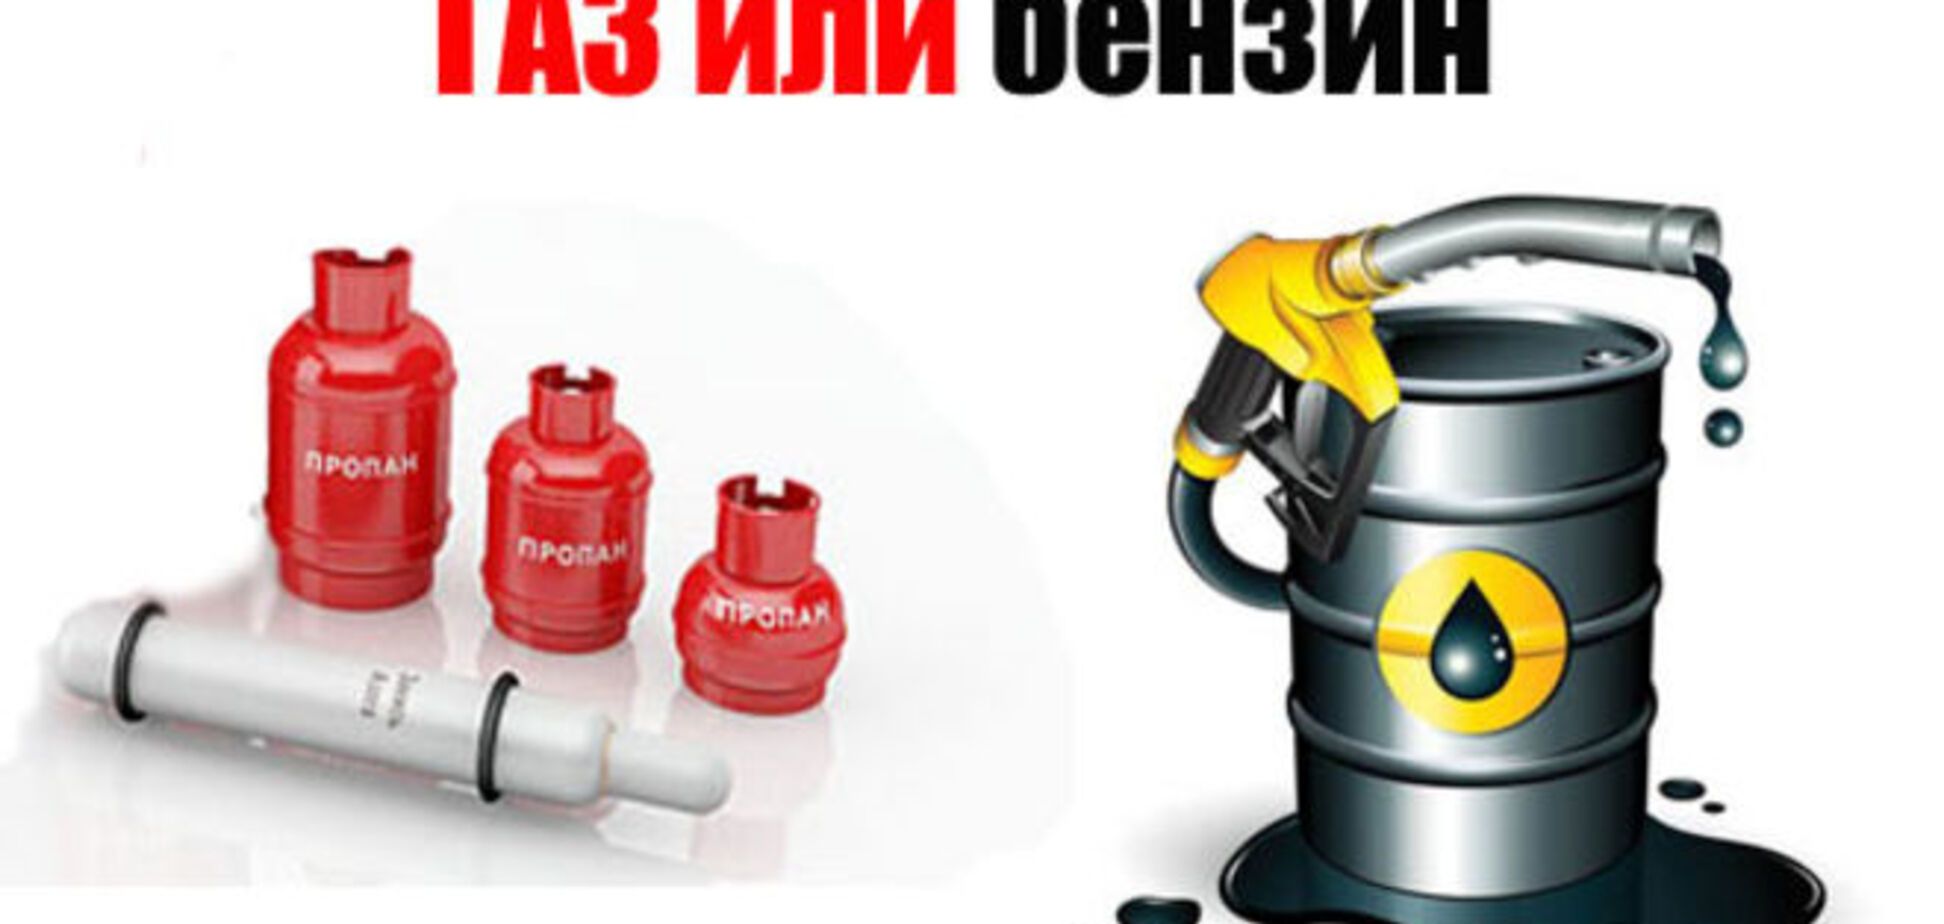 С бензина на газ: в Украине хотят отменить перерегистрацию авто